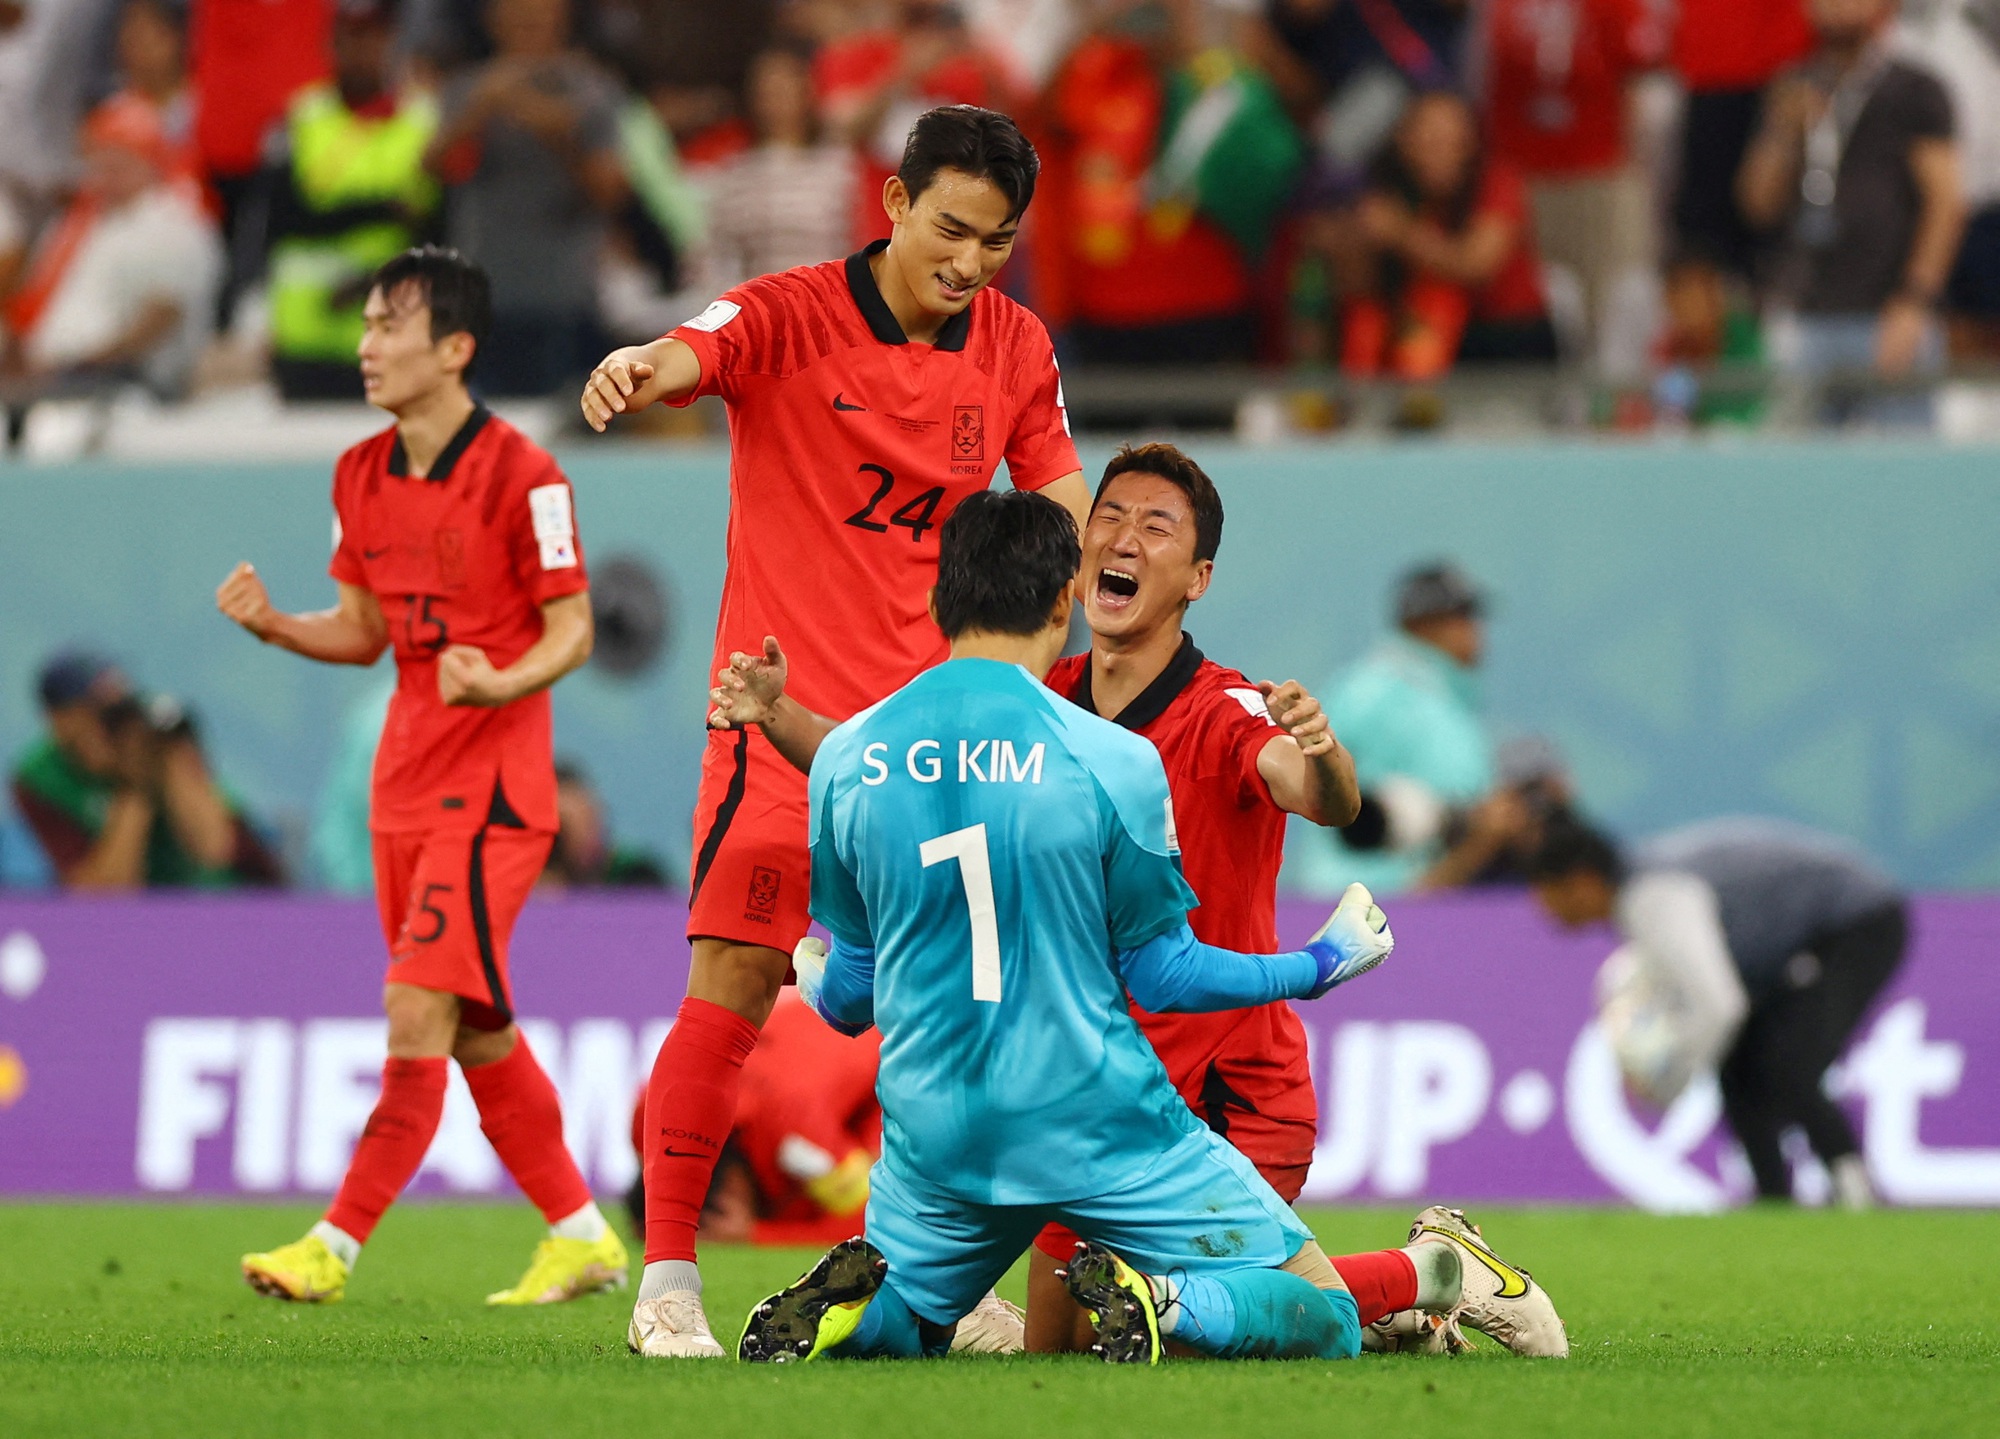 Dự đoán tỉ số Brazil – Hàn Quốc - Trận đấu giữa đội bóng Samba và đội tuyển Hàn Quốc sẽ diễn ra trong thời gian tới. Các fan hâm mộ đang háo hức dự đoán kết quả của trận đấu này. Hãy cùng xem hình ảnh về các cầu thủ hai đội và cảm nhận ngay trước thềm trận đấu đáng chờ đợi này!